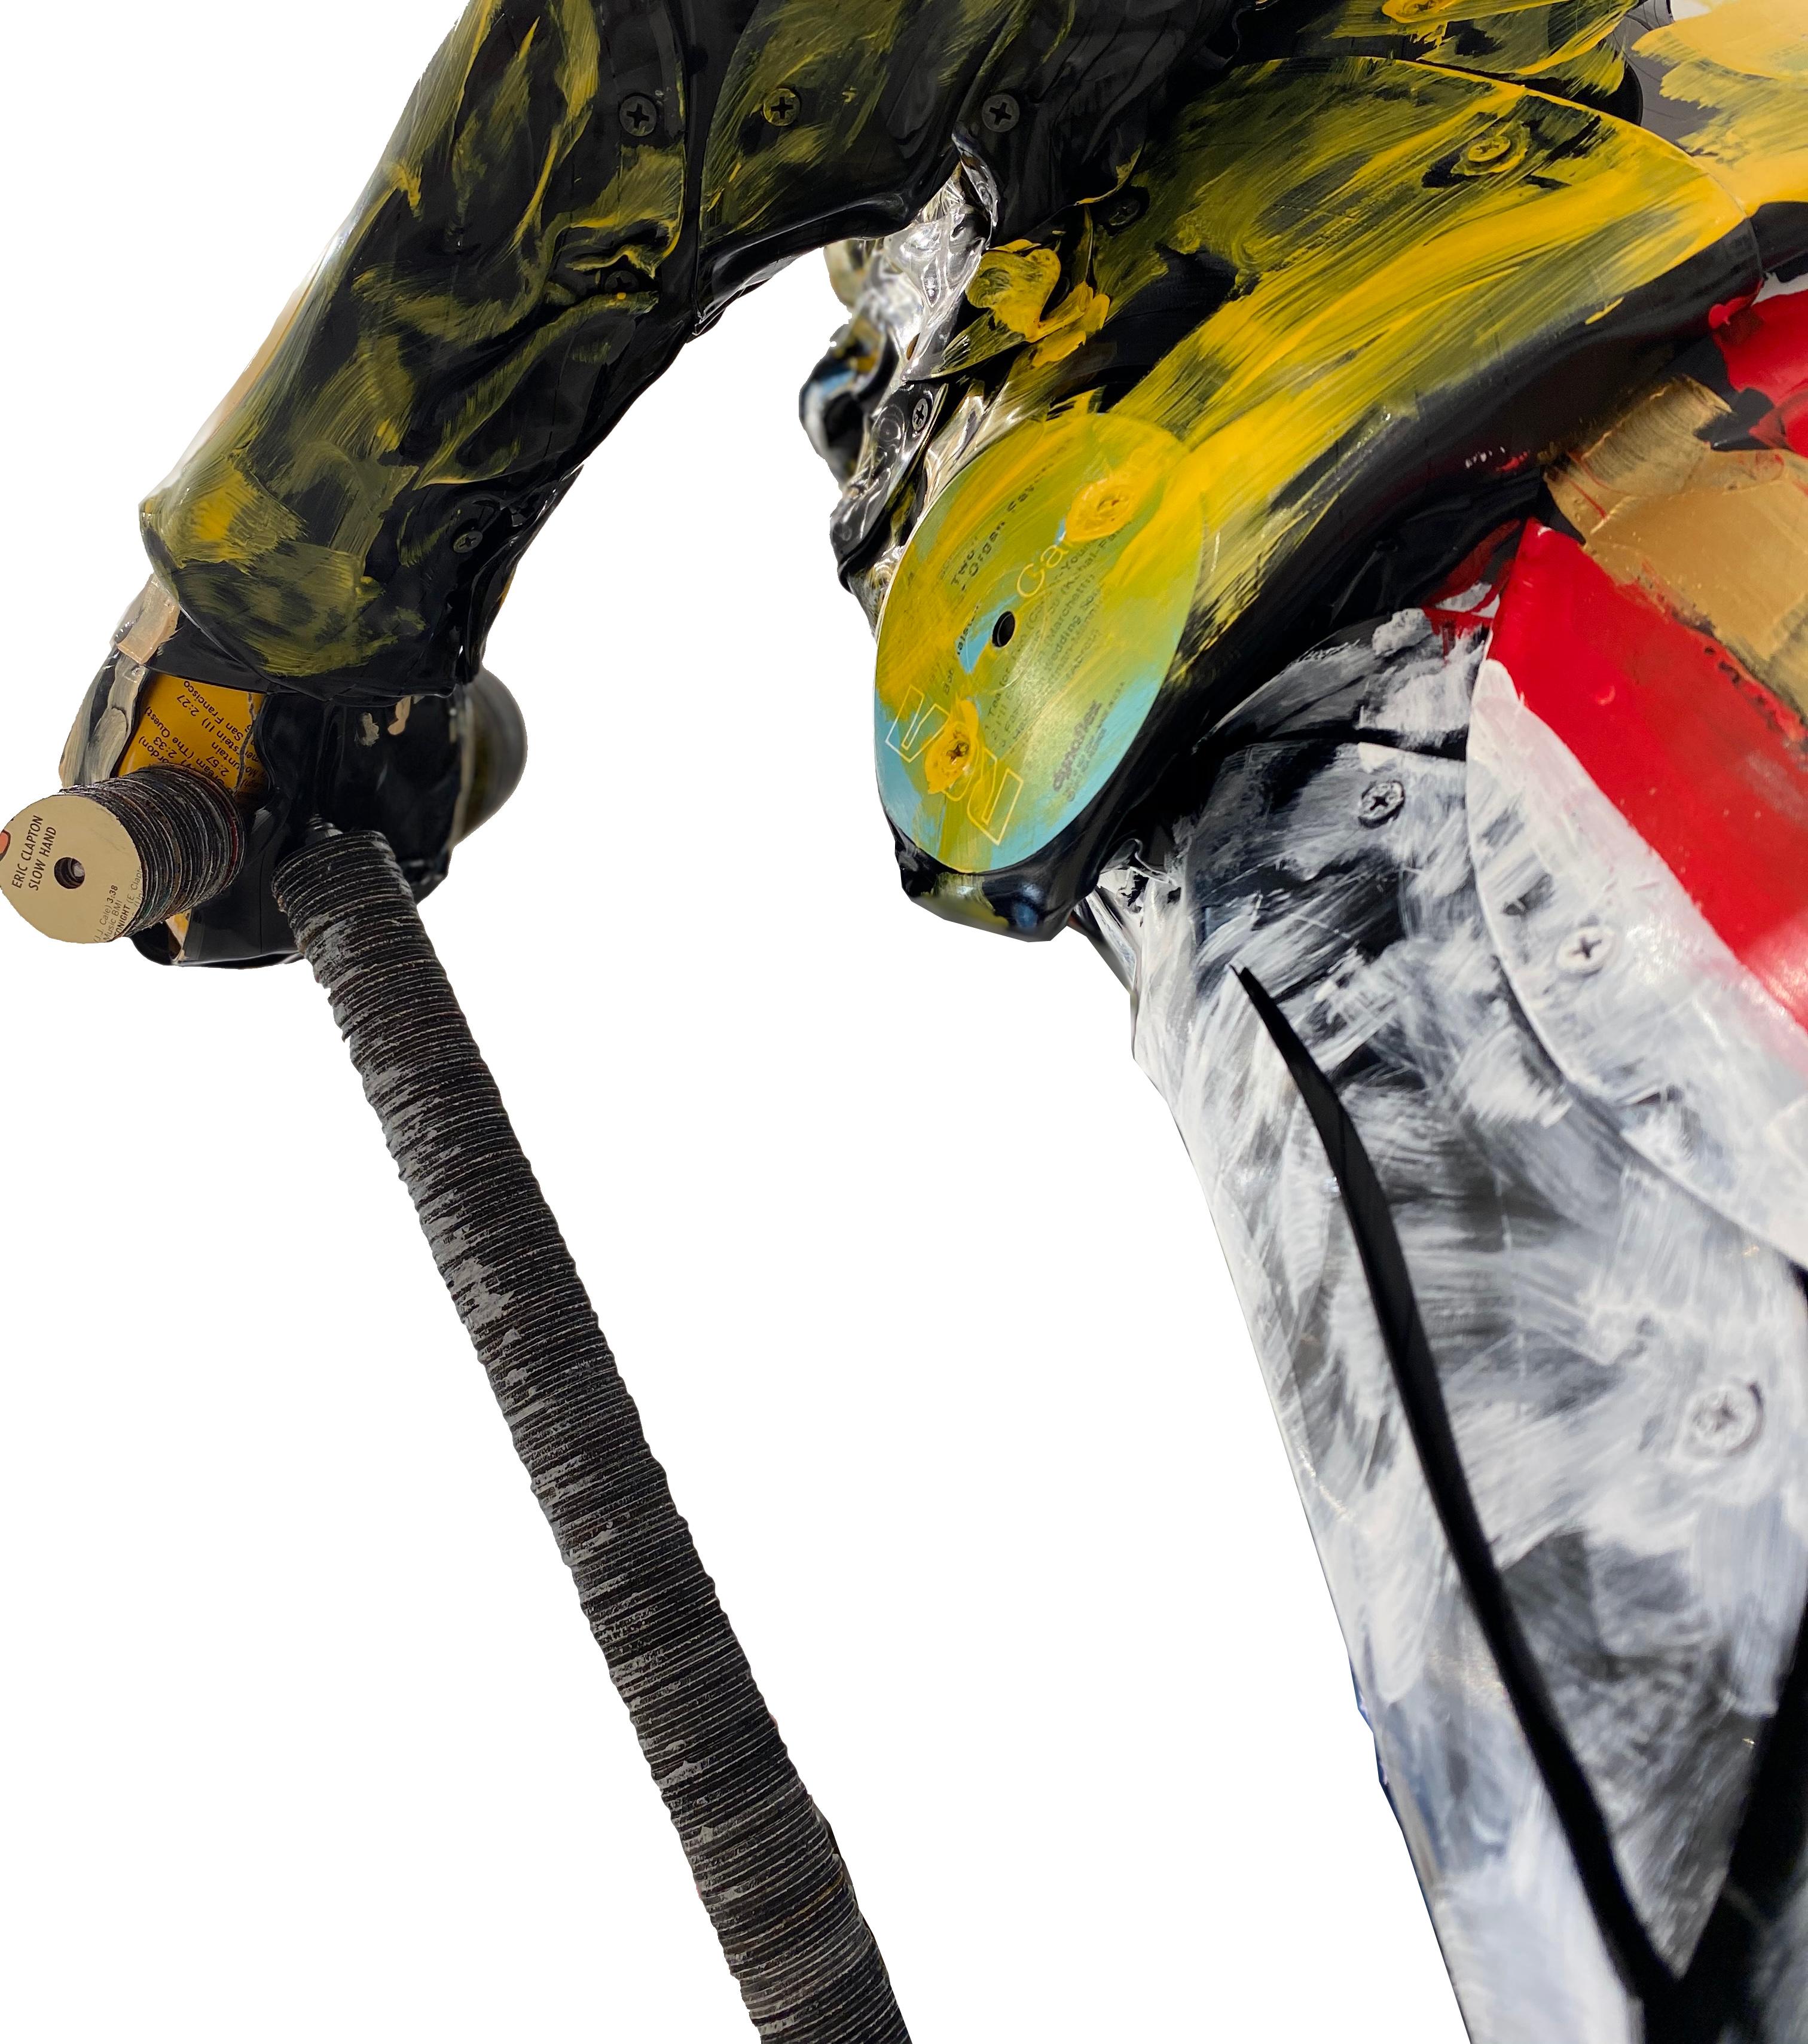 Freddie Mercury est une sculpture unique créée à partir de disques vinyles par l'artiste belge Georges Monfils. 

Il réutilise des matériaux tels que des disques vinyles et des touches de clavier pour en faire des concepts et des créations durables,